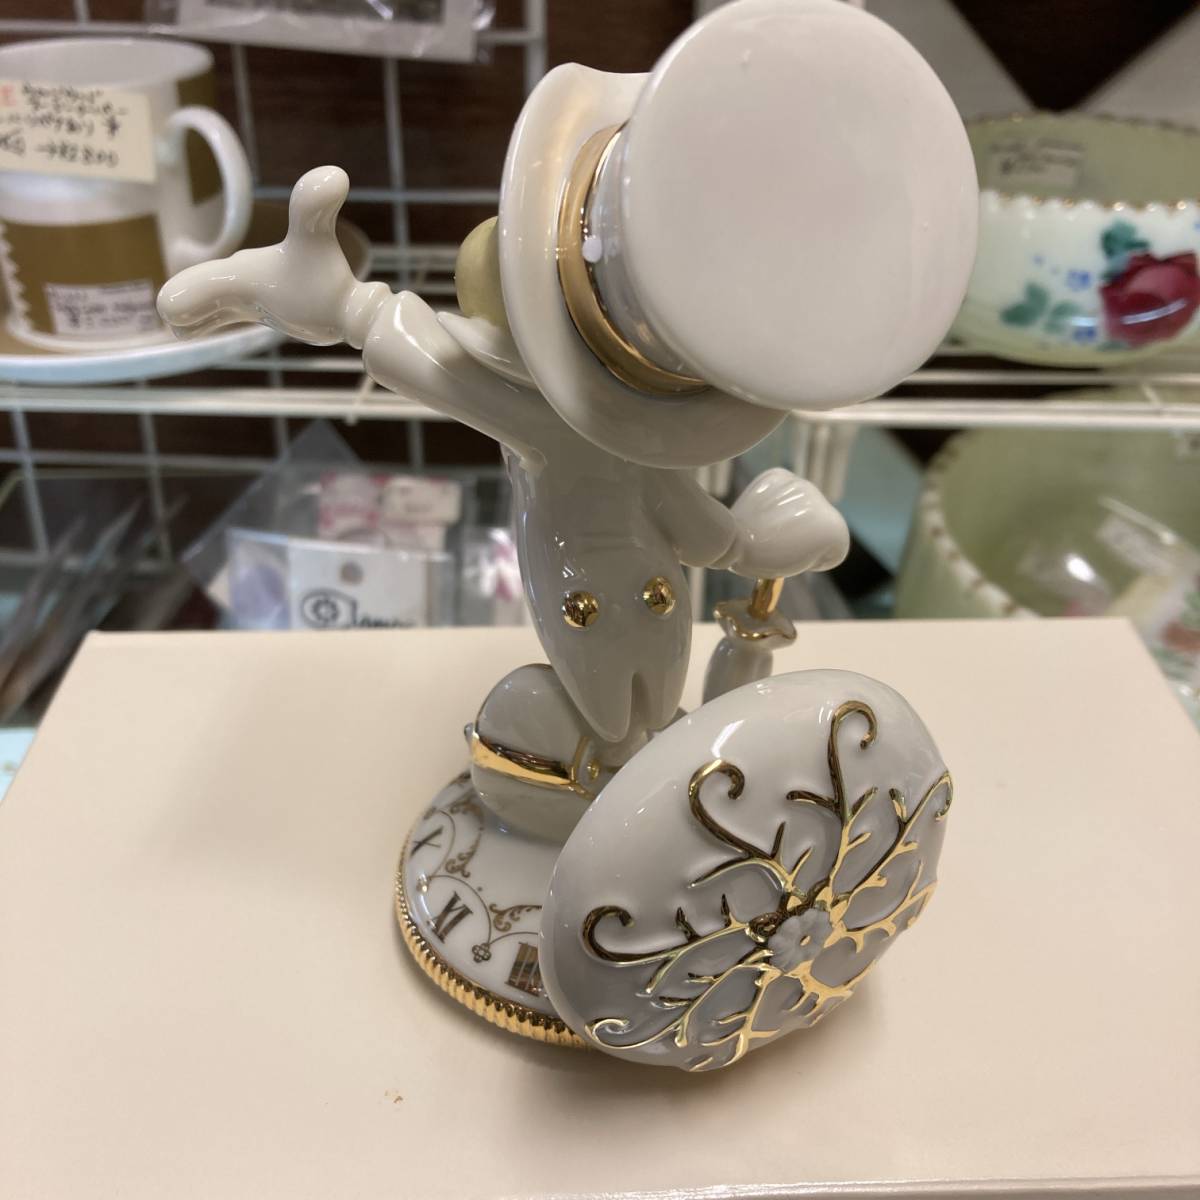 re knock s* Disney showcase Pinocchio ji minnie kli Kett ceramics made ornament * figure Lynn, box attaching, beautiful goods 